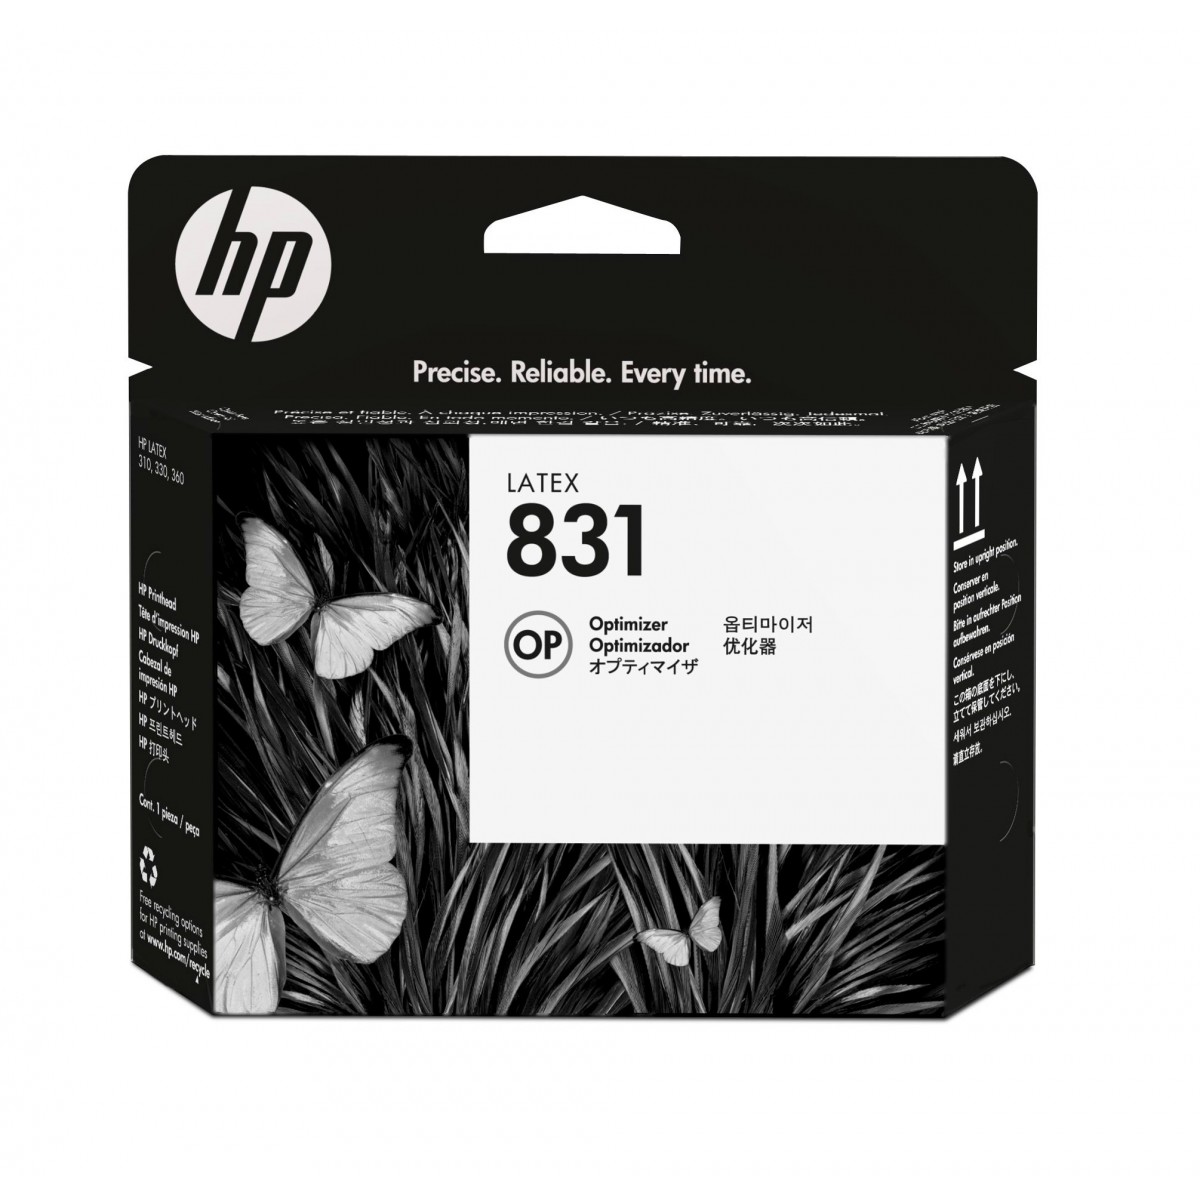 HP 831 Latex Optimizer Printhead - HP Latex 110 Printer - HP Latex 310 Printer - HP Latex 330 Printer - HP Latex 360 Printer - H